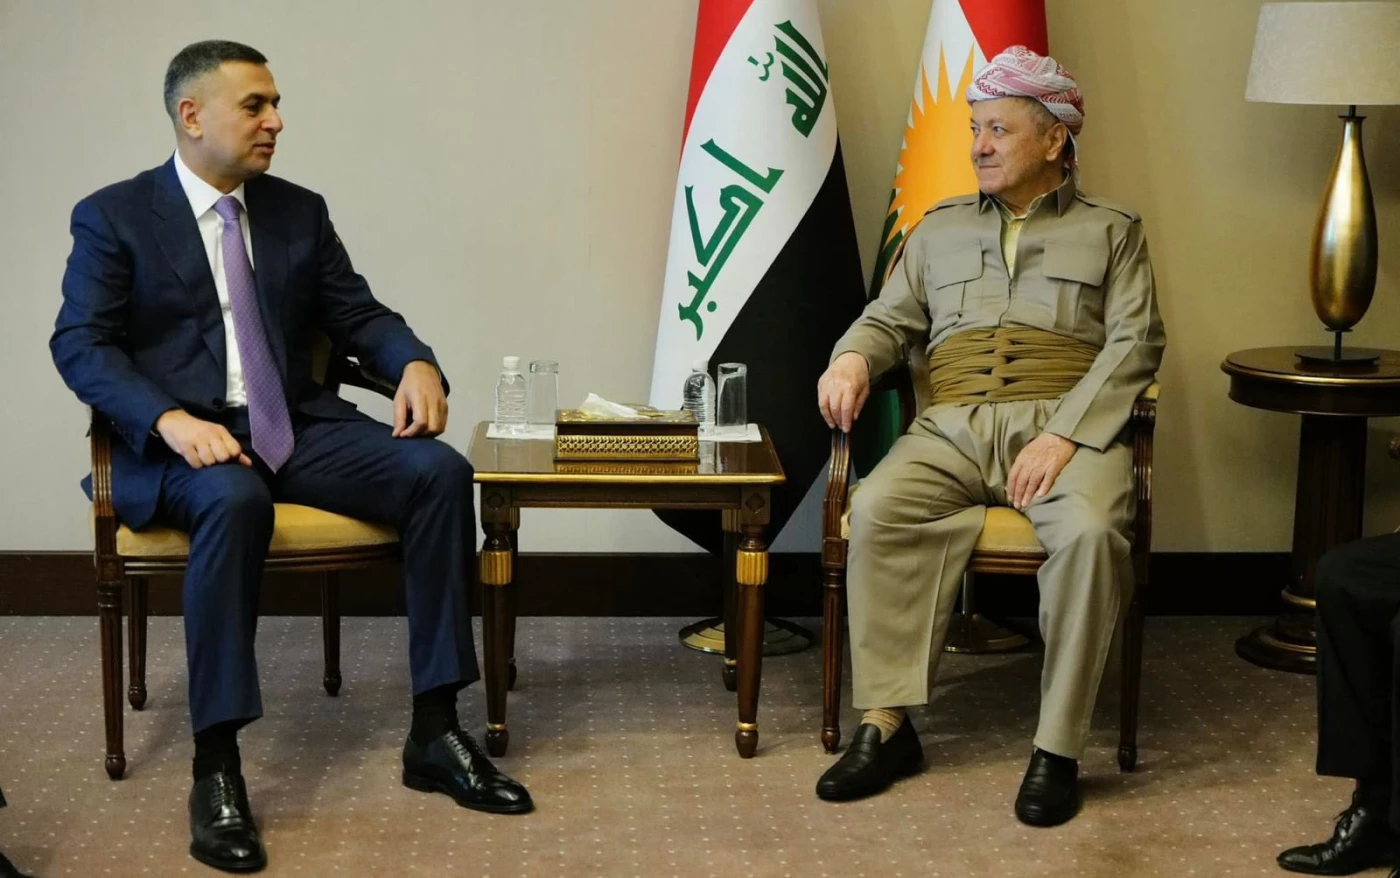 President Barzani’s visitRead More